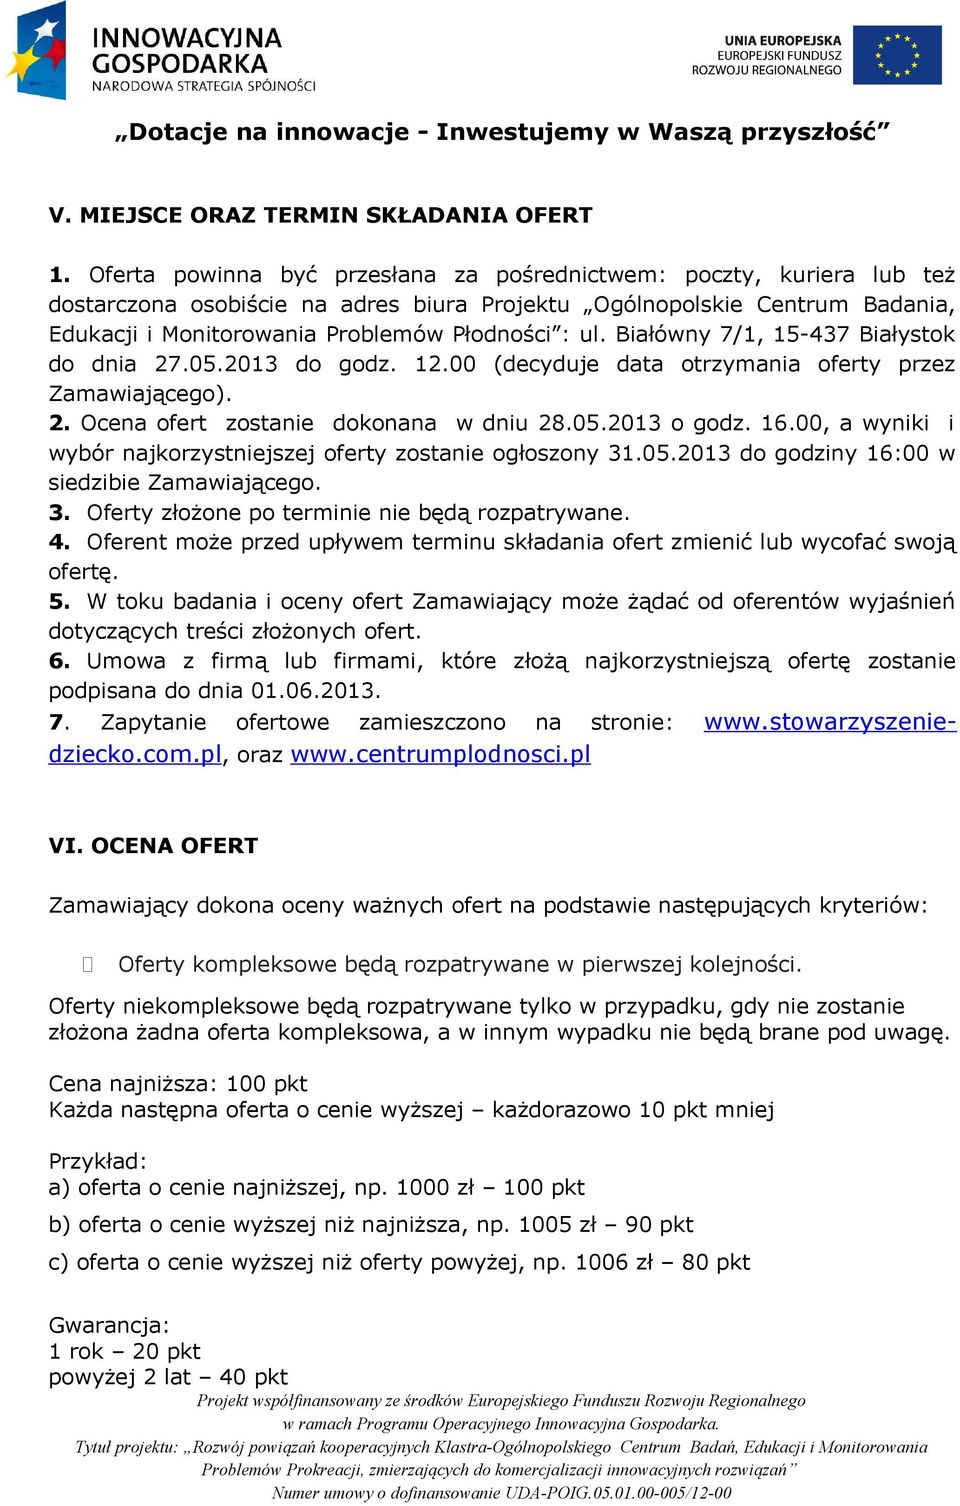 Białówny 7/1, 15-437 Białystok do dnia 27.05.2013 do godz. 12.00 (decyduje data otrzymania oferty przez Zamawiającego). 2. Ocena ofert zostanie dokonana w dniu 28.05.2013 o godz. 16.